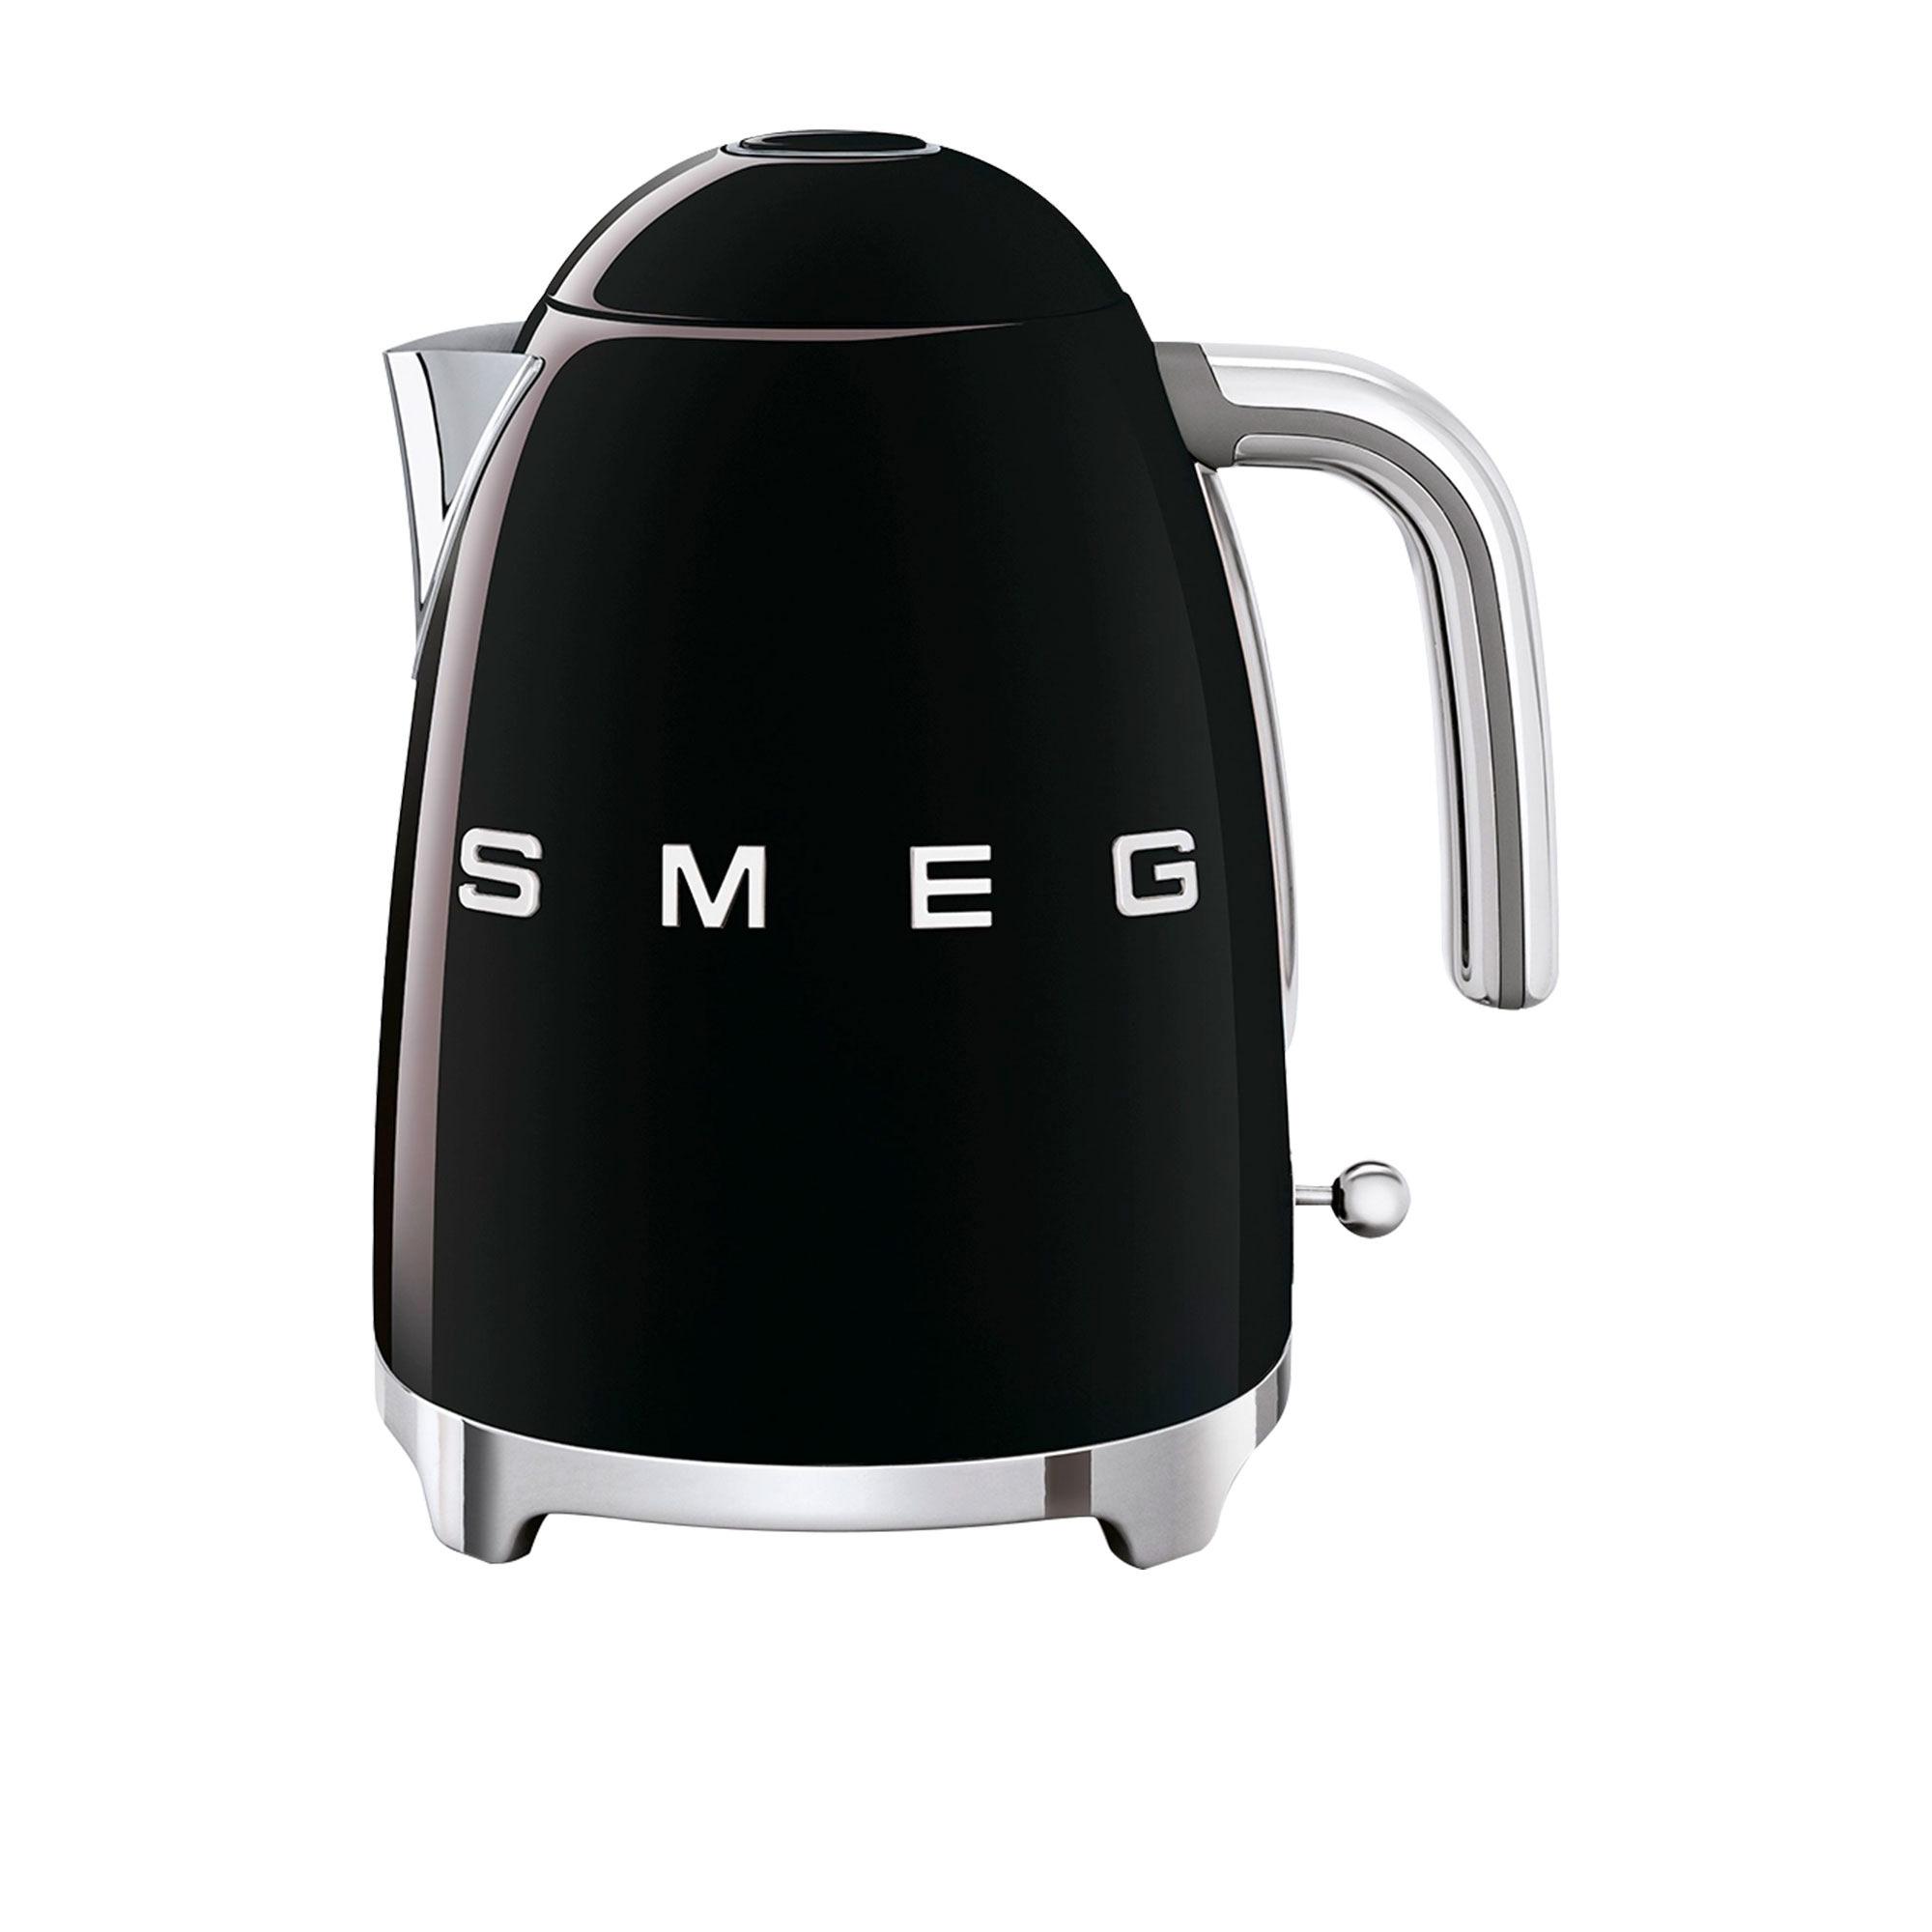 Smeg 50's Retro Style Kettle 1.7L Black Image 1